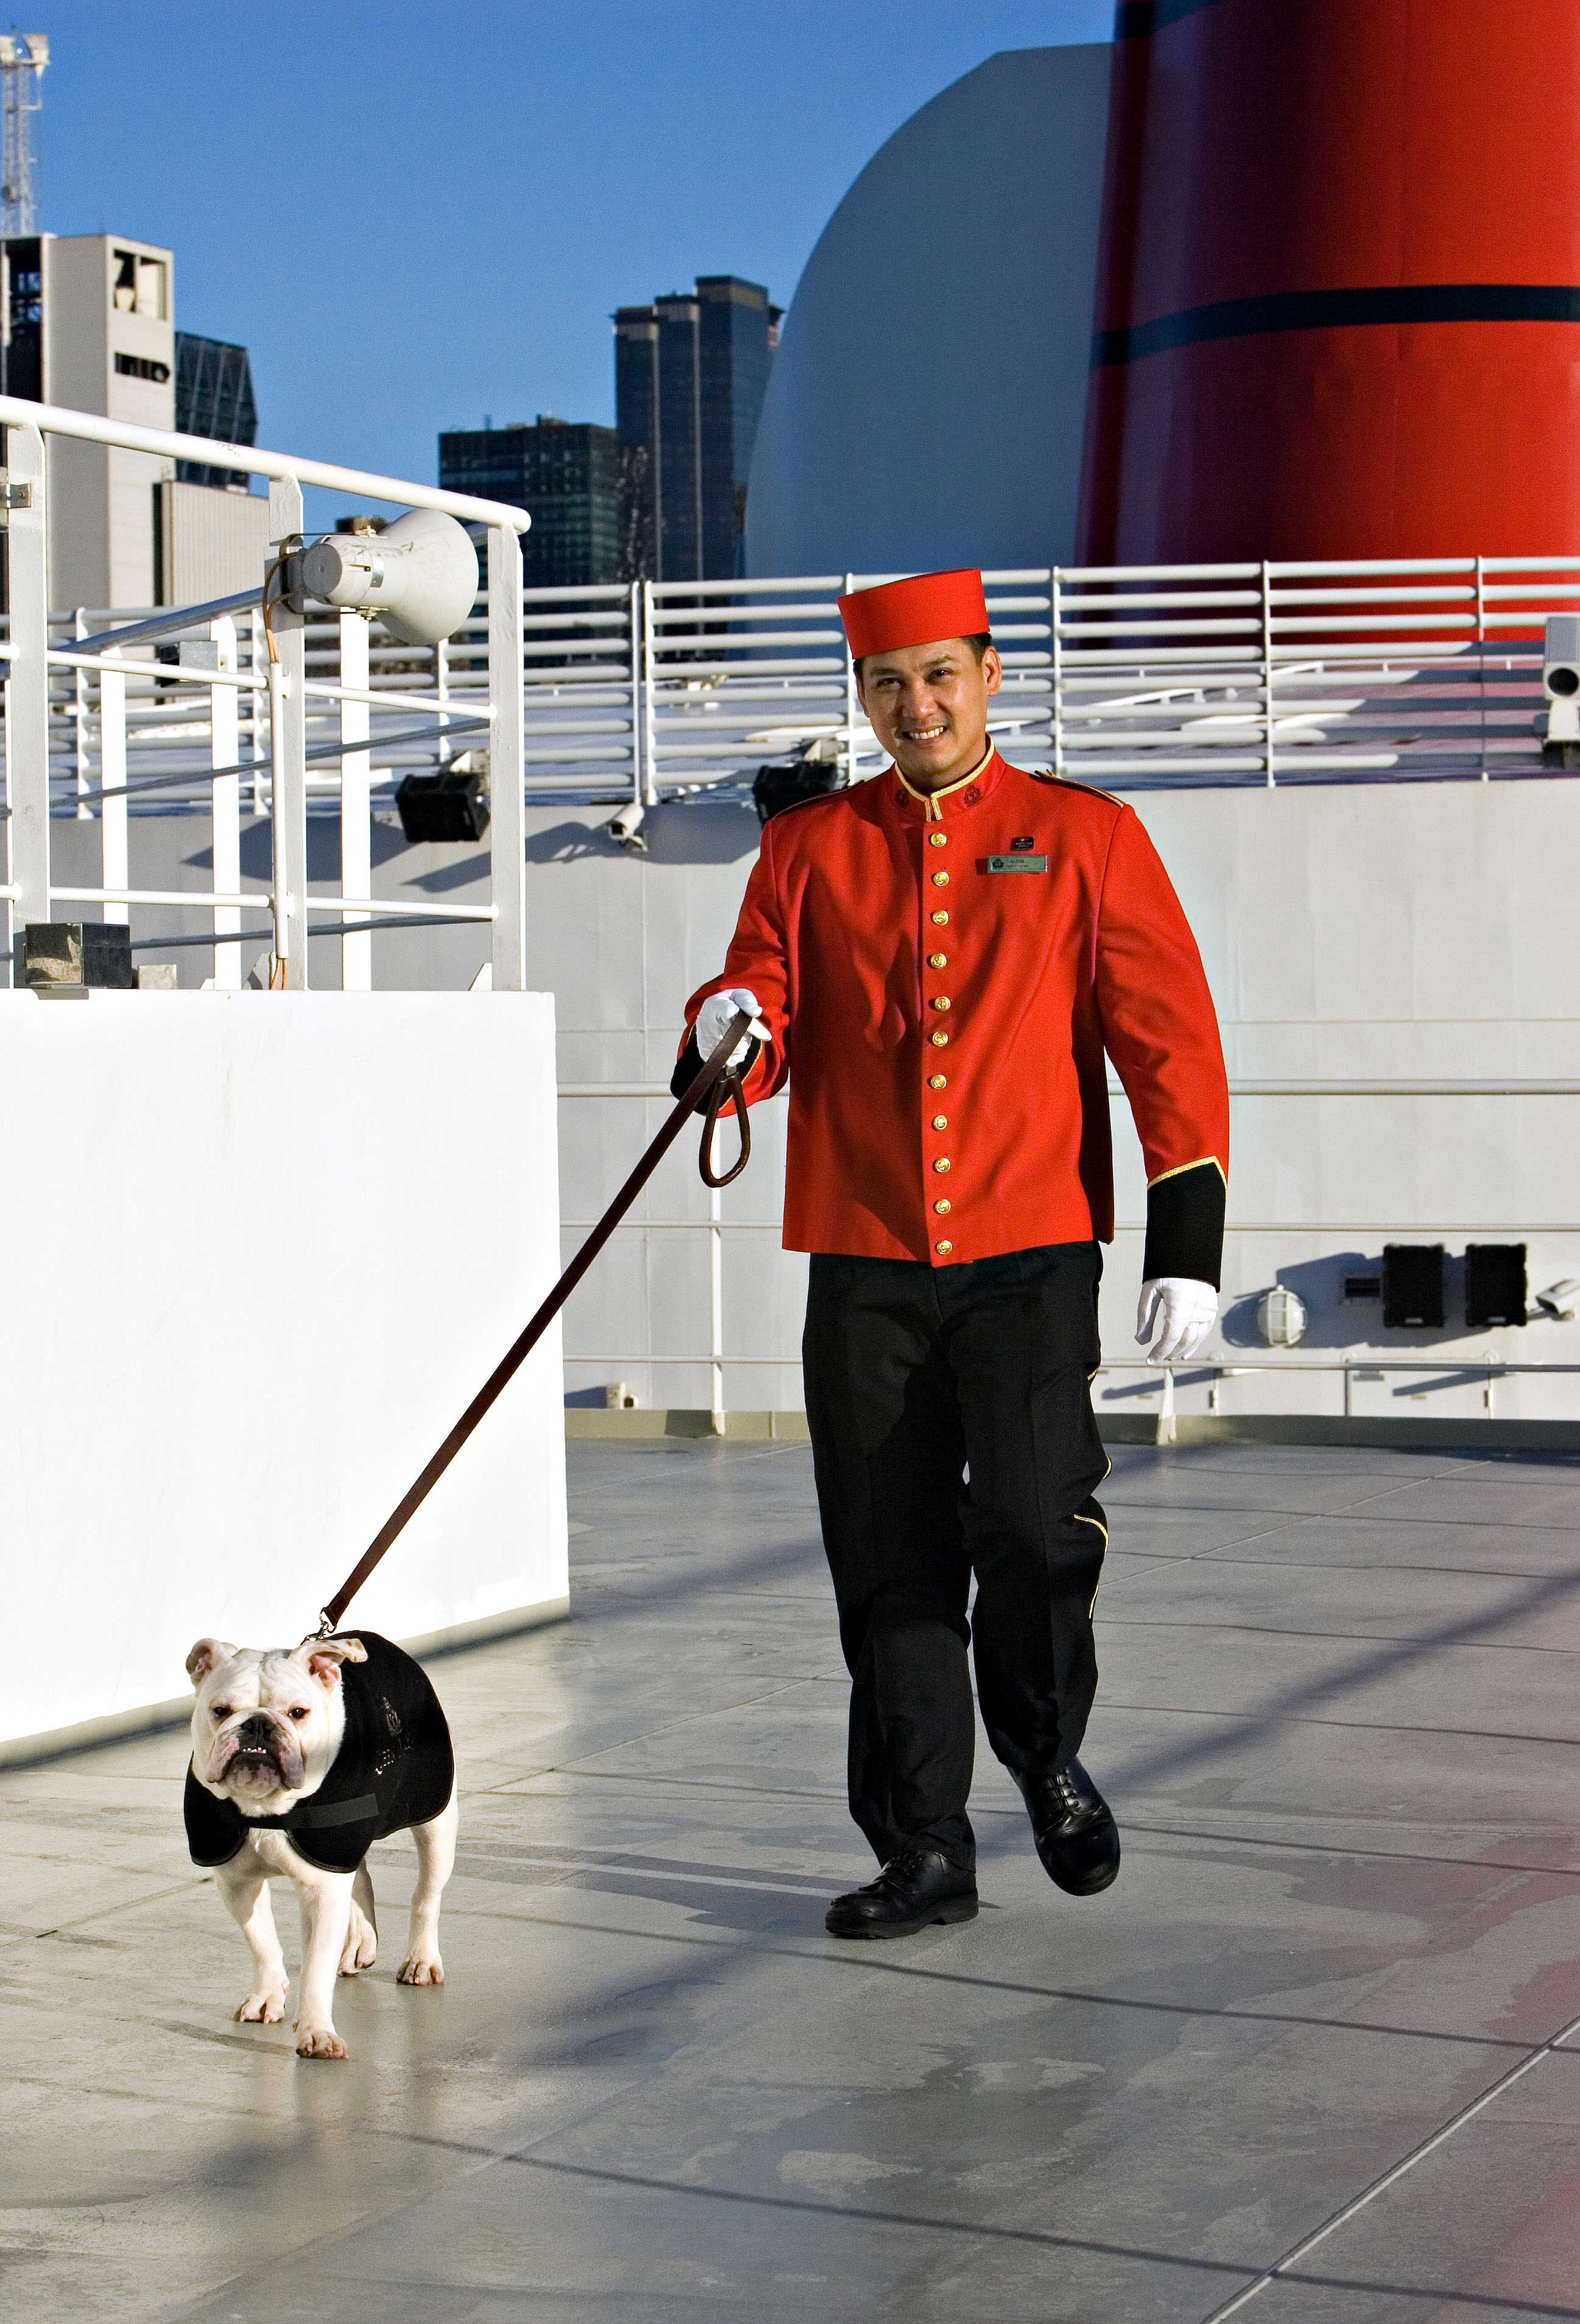 Queen Mary 2 Steward walks Bulldog in Cunard Coat on Deck